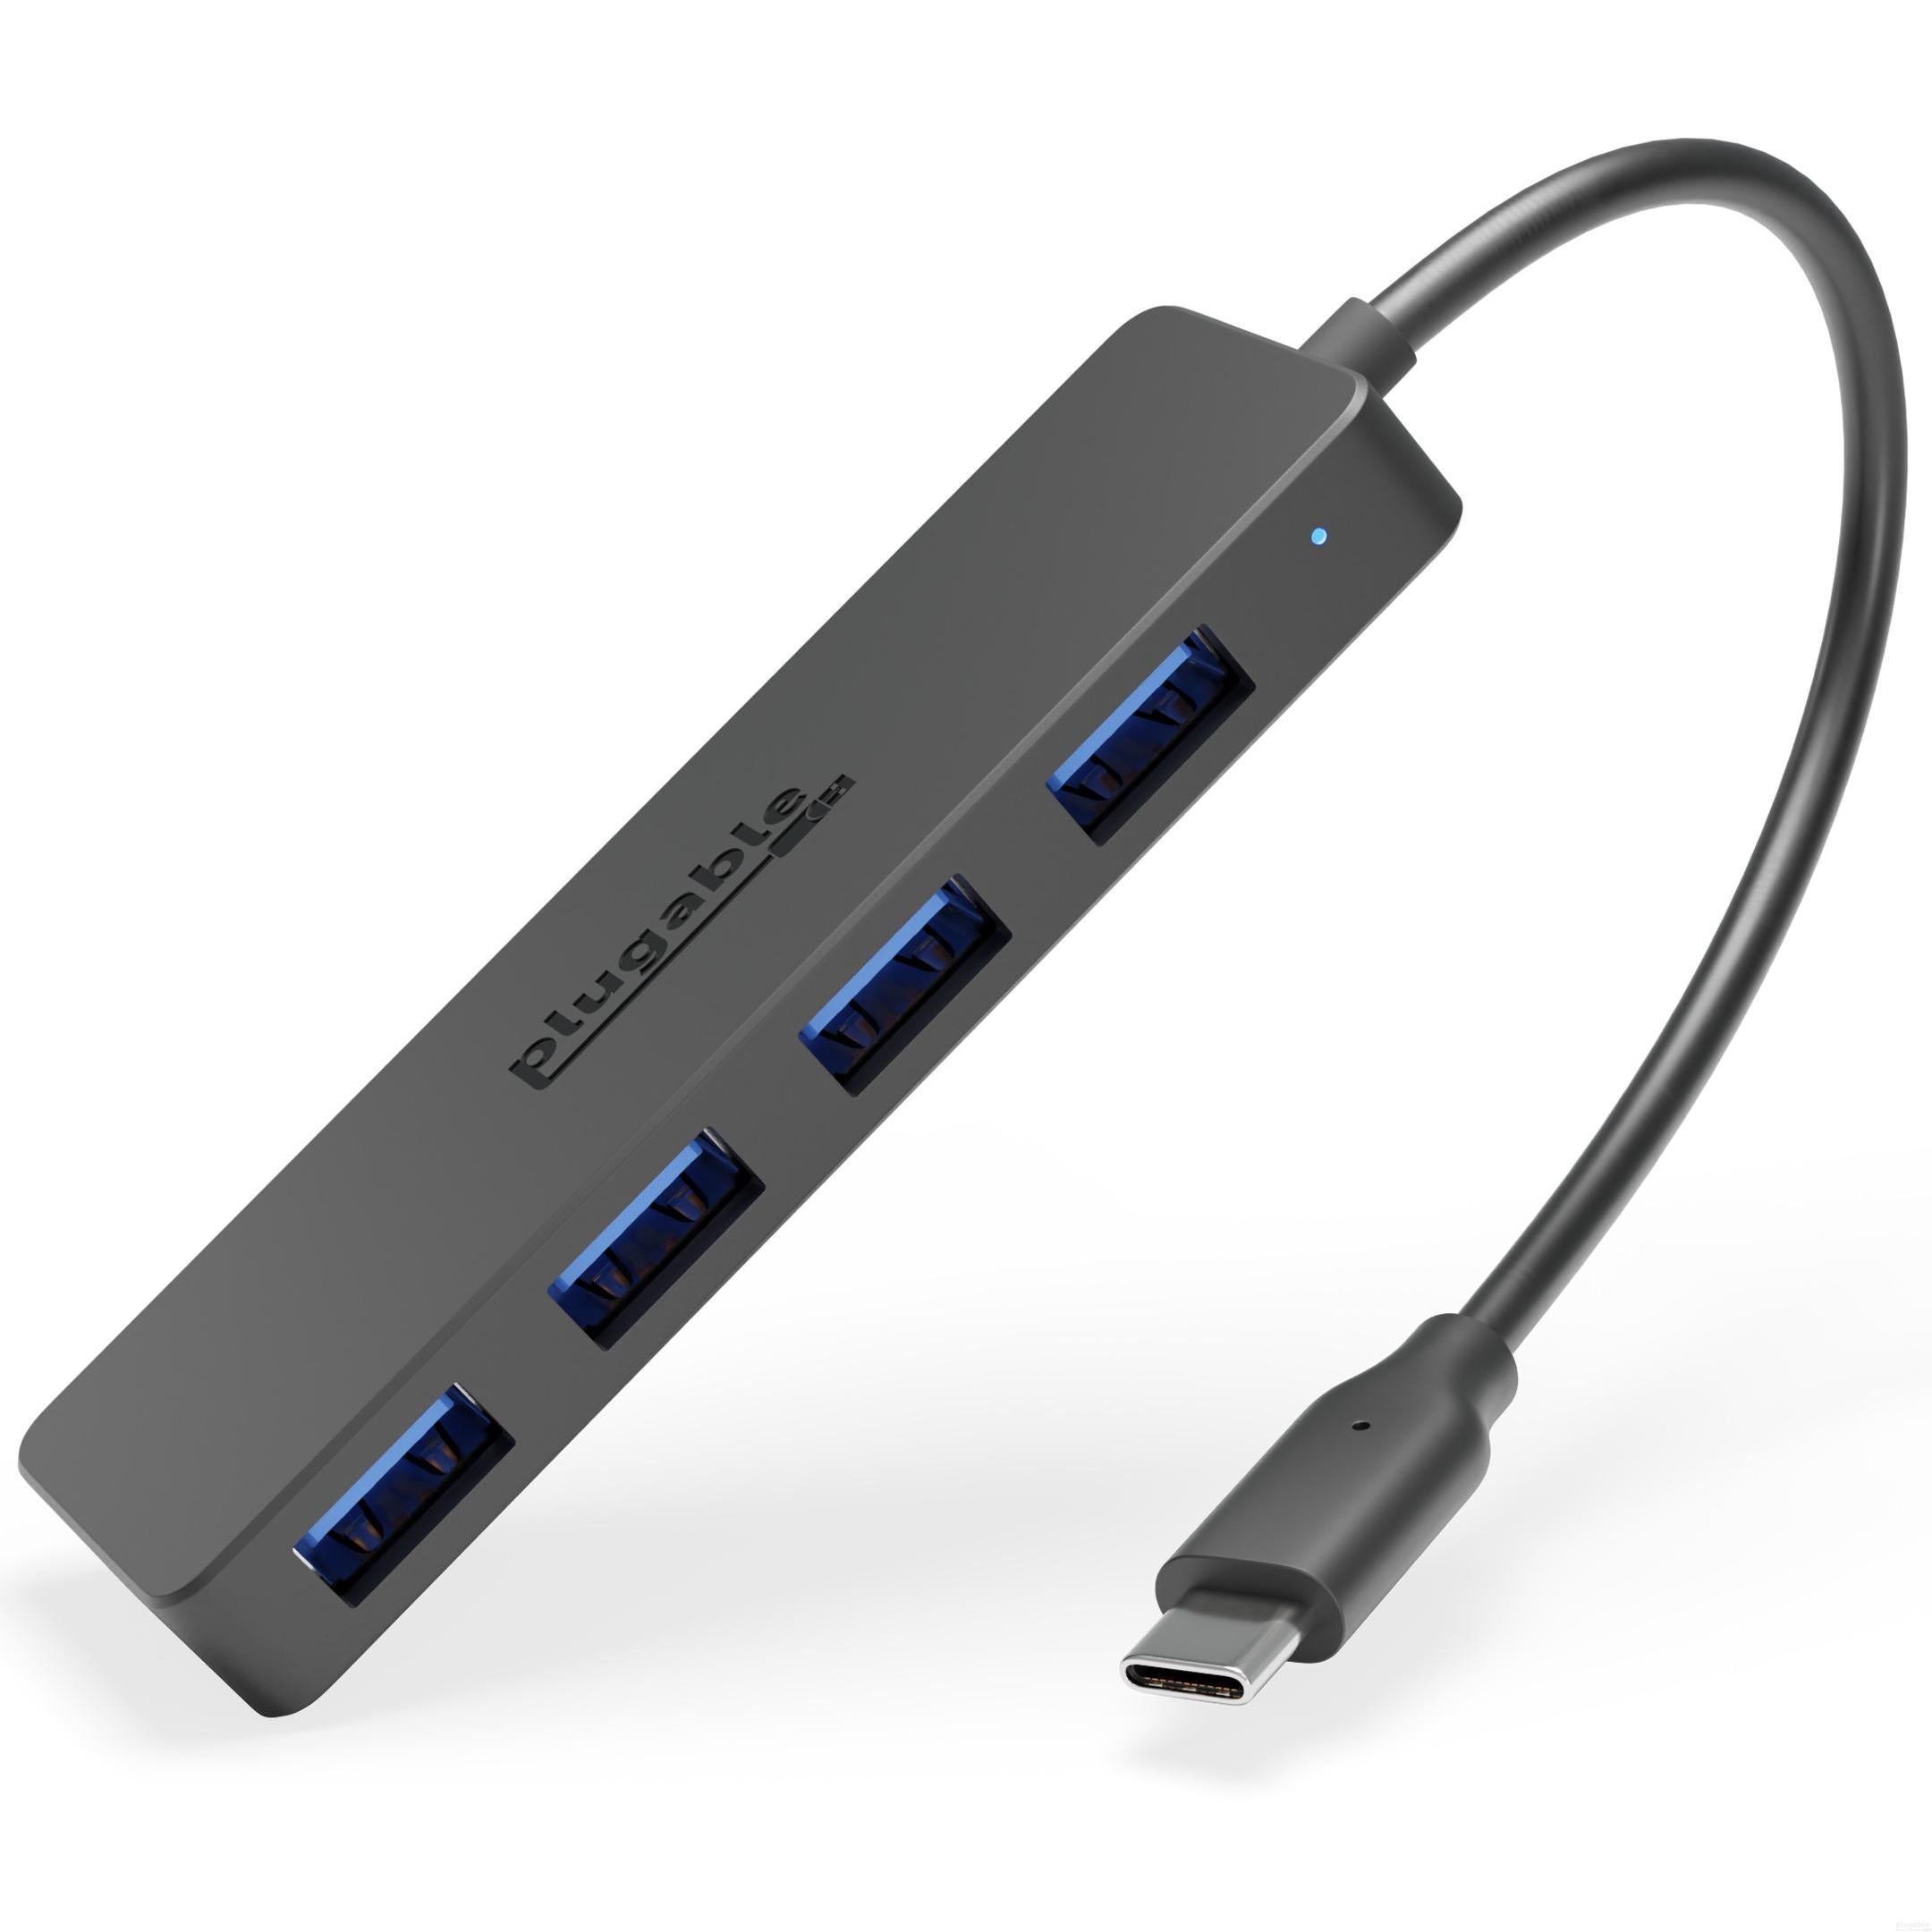 Plugable USB-C 4-Port Hub – Plugable Technologies